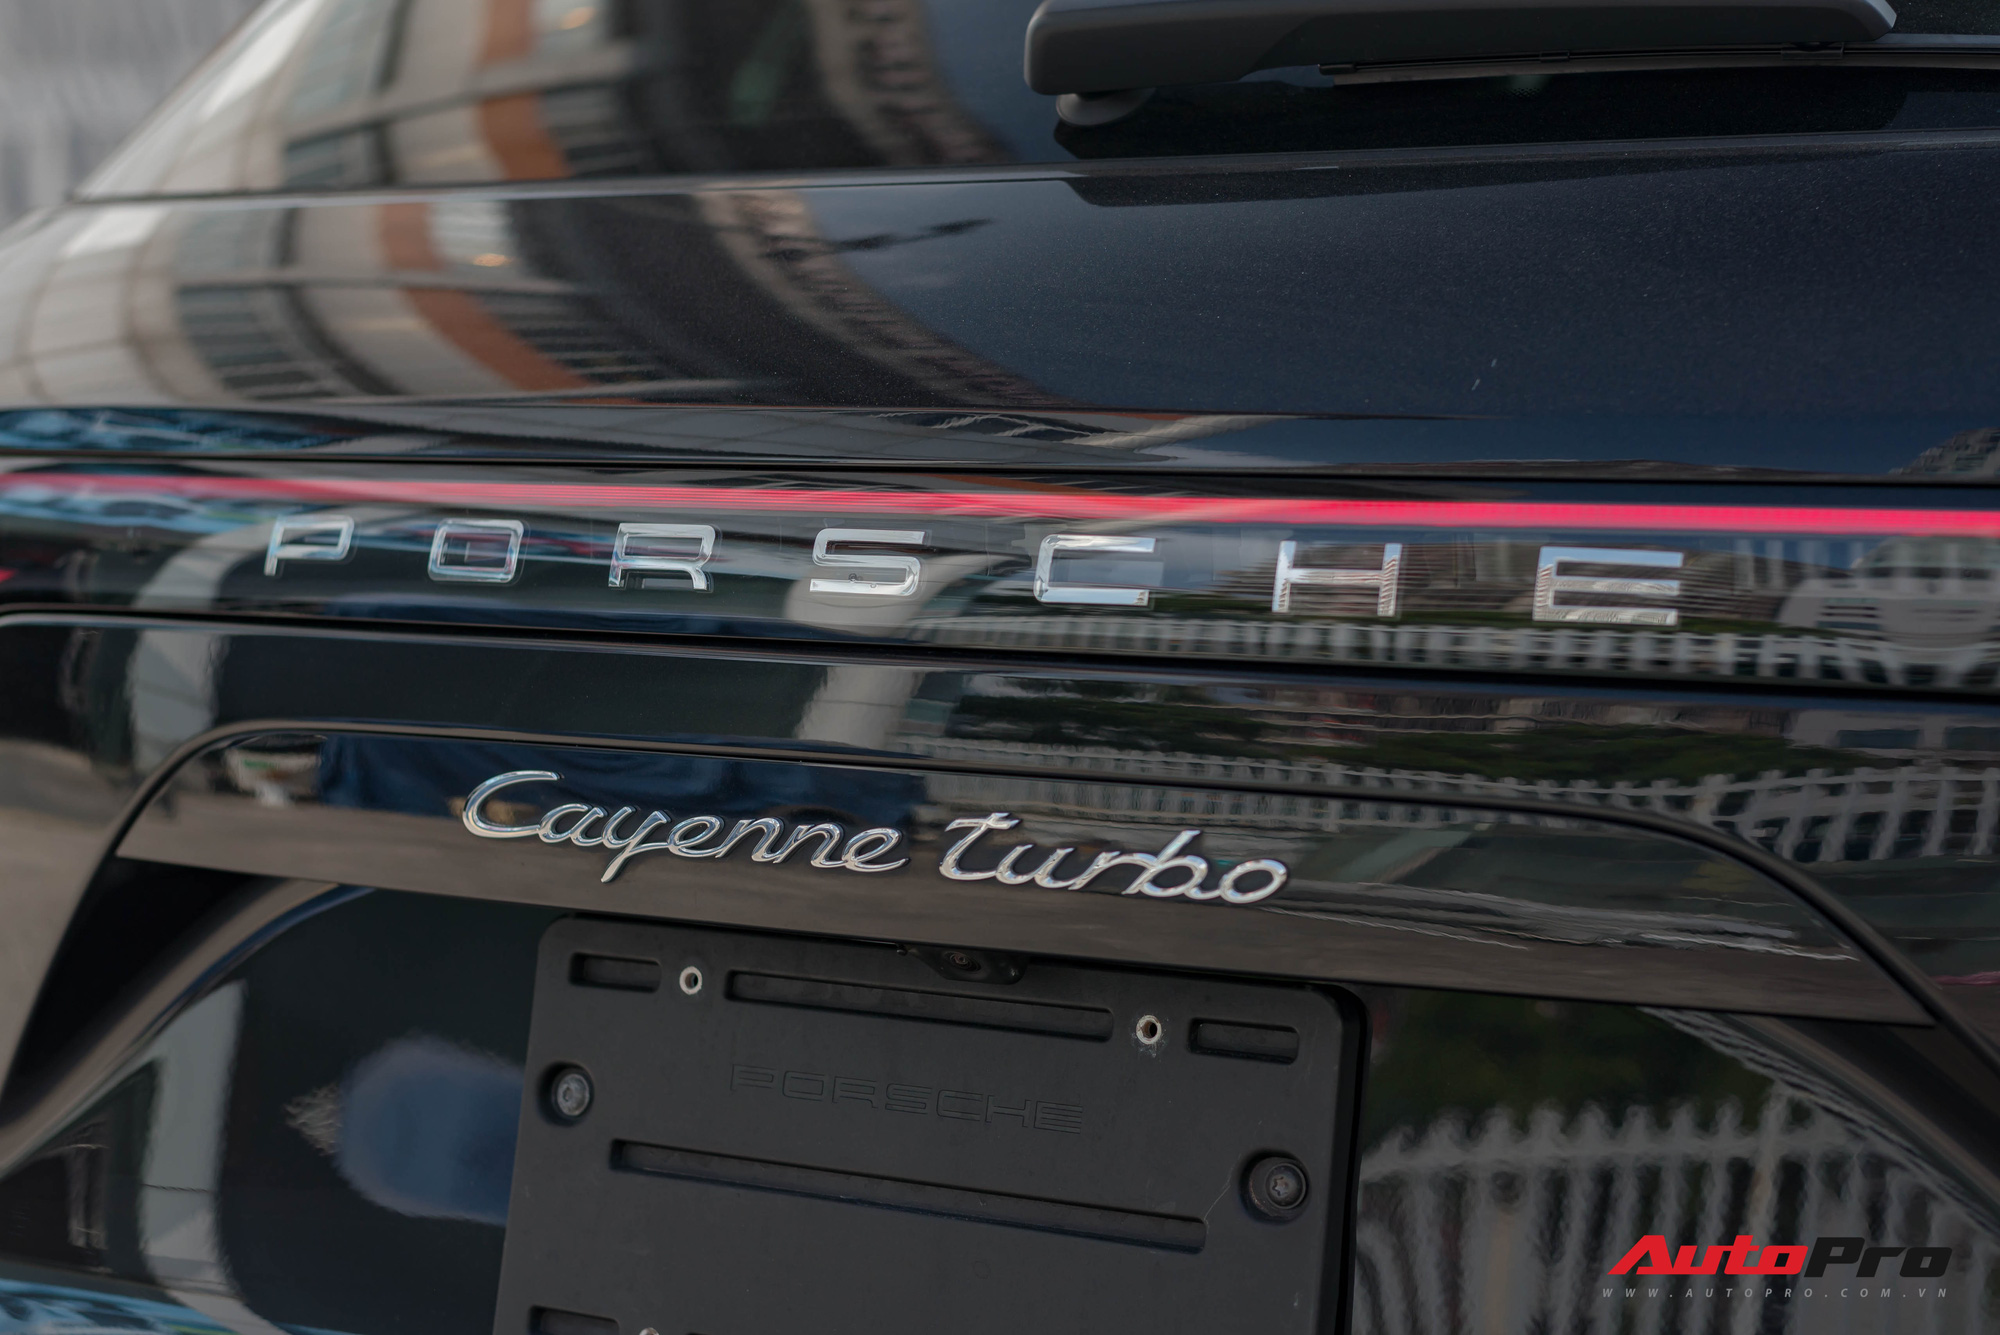 Ngắm Porsche Cayenne Turbo 2020 vừa về Việt Nam: SUV giá hơn 10 tỷ đồng cho đại gia thích tốc độ - Ảnh 5.